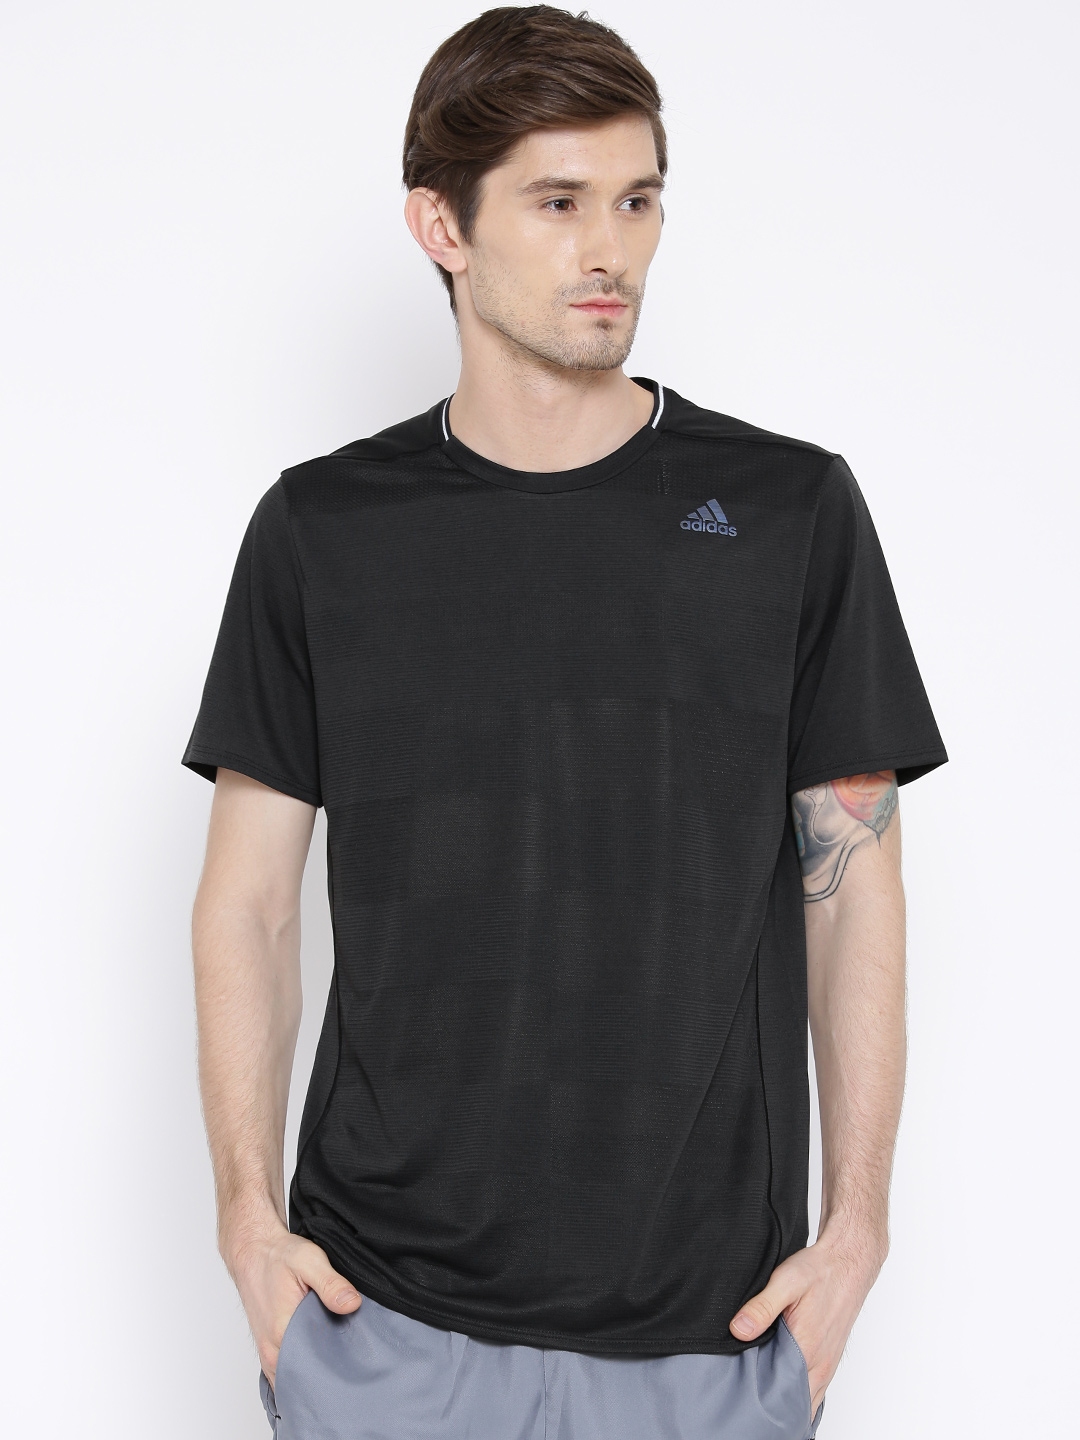 Buy ADIDAS Black SN Polyester Running T Shirt - Tshirts for Men 1417212 ...